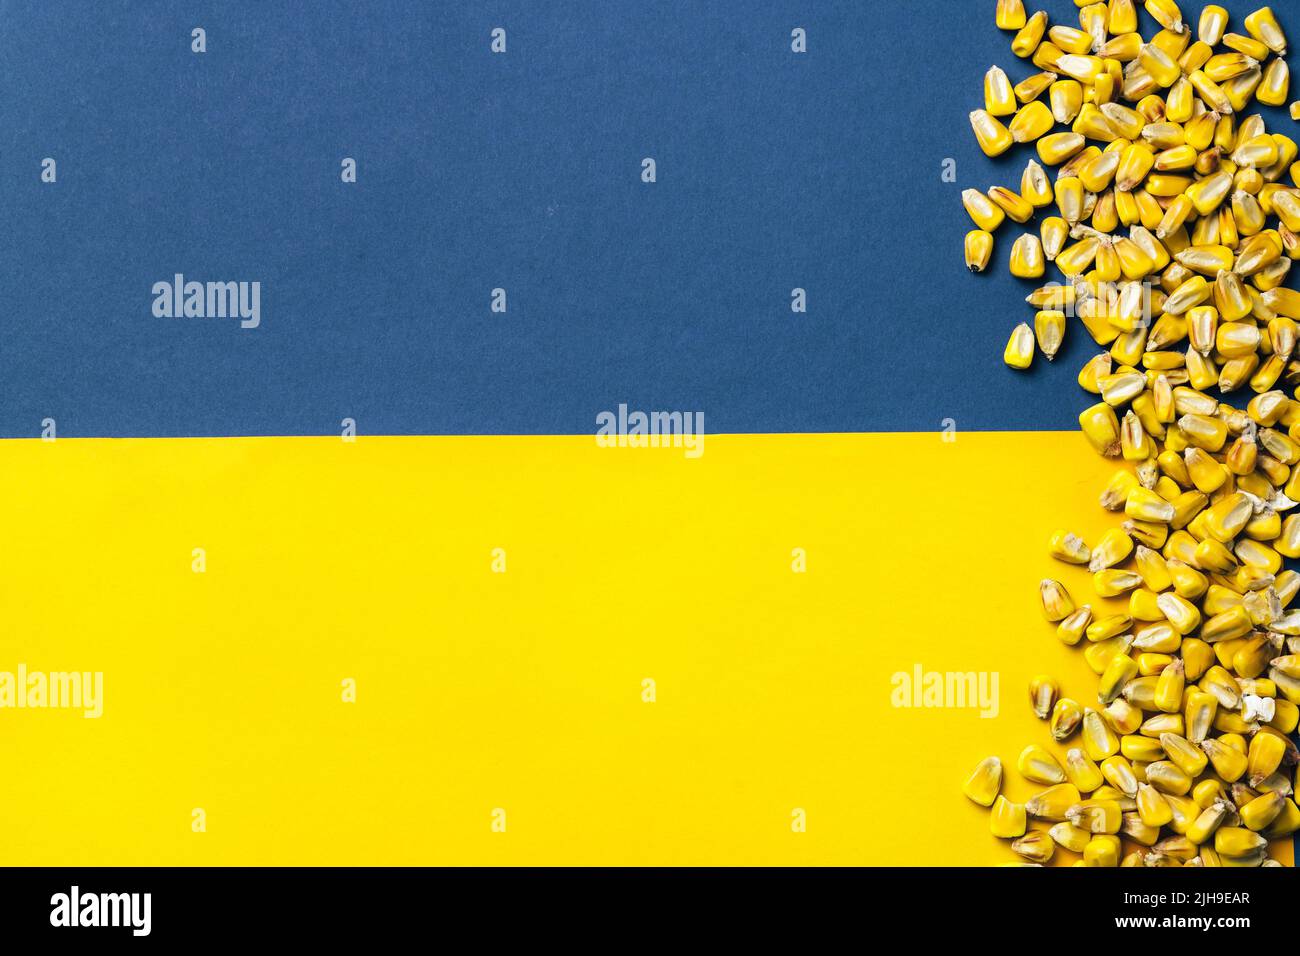 Grains de maïs sur fond de drapeau ukrainien. Crise mondiale et européenne des céréales et du blé après l'invasion de l'Ukraine par la Russie 2022. Embargo et sanction pour l'exportation de céréales Banque D'Images